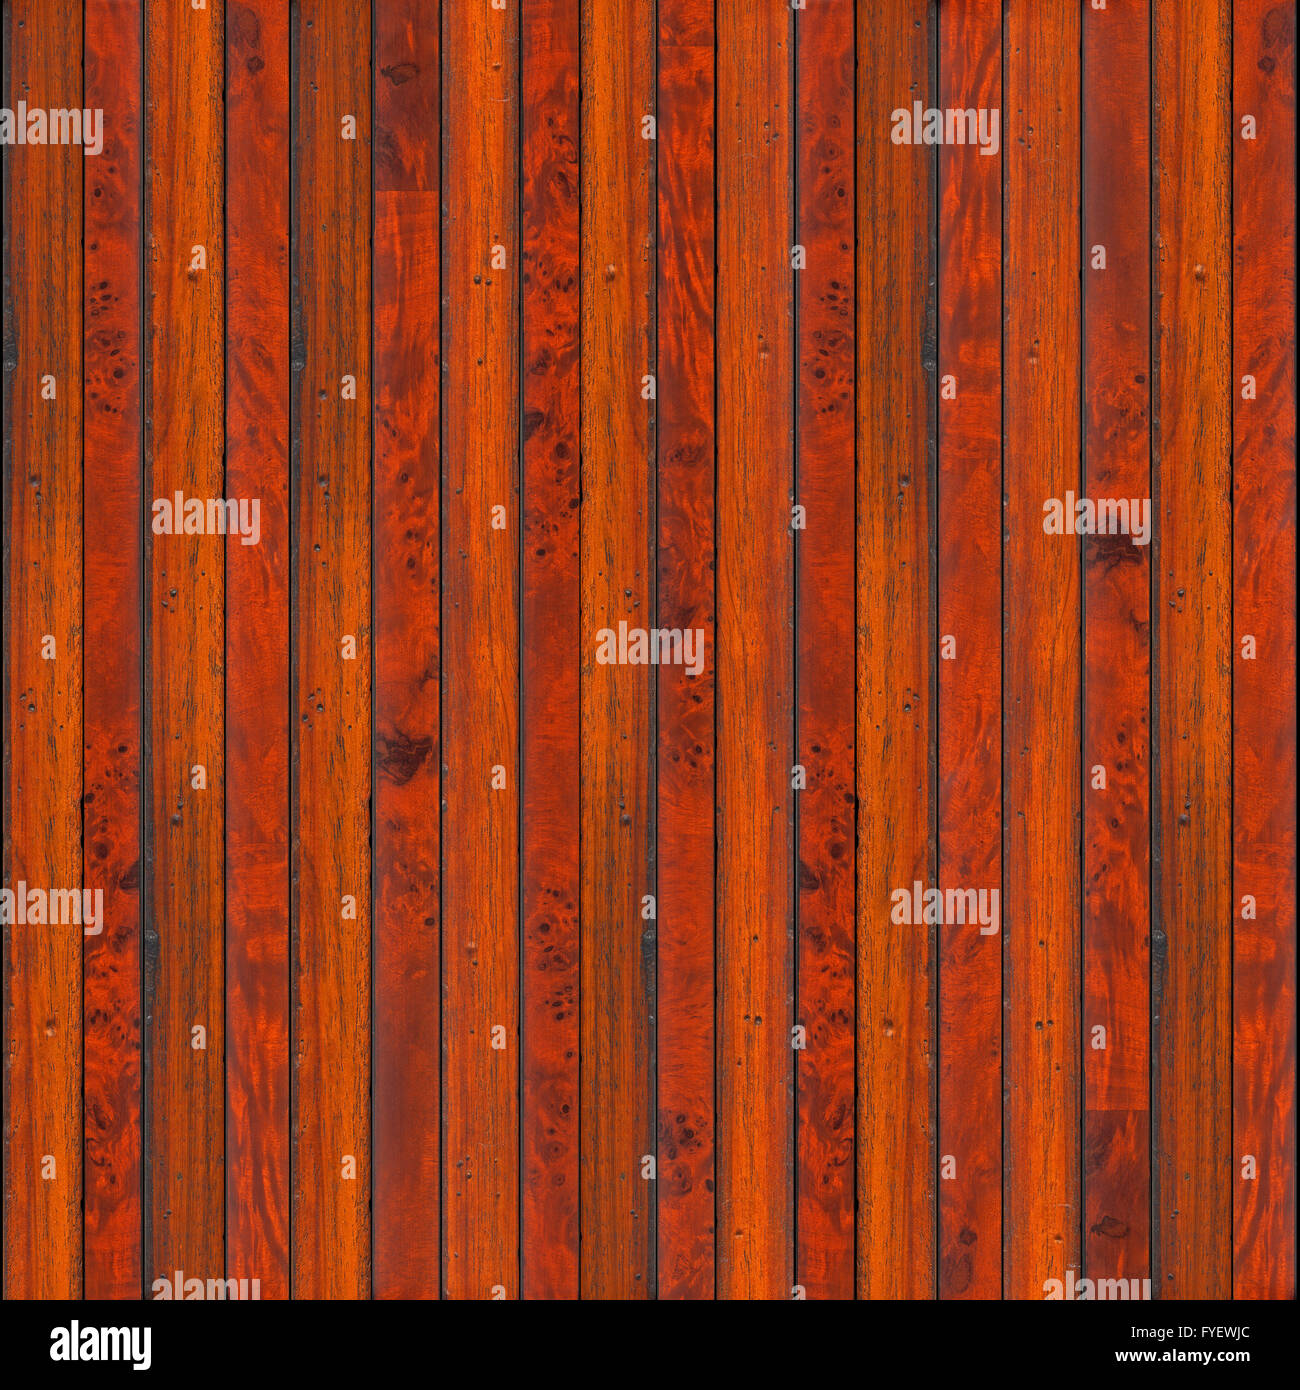 Vintage Wood Panels Background Stock Photo